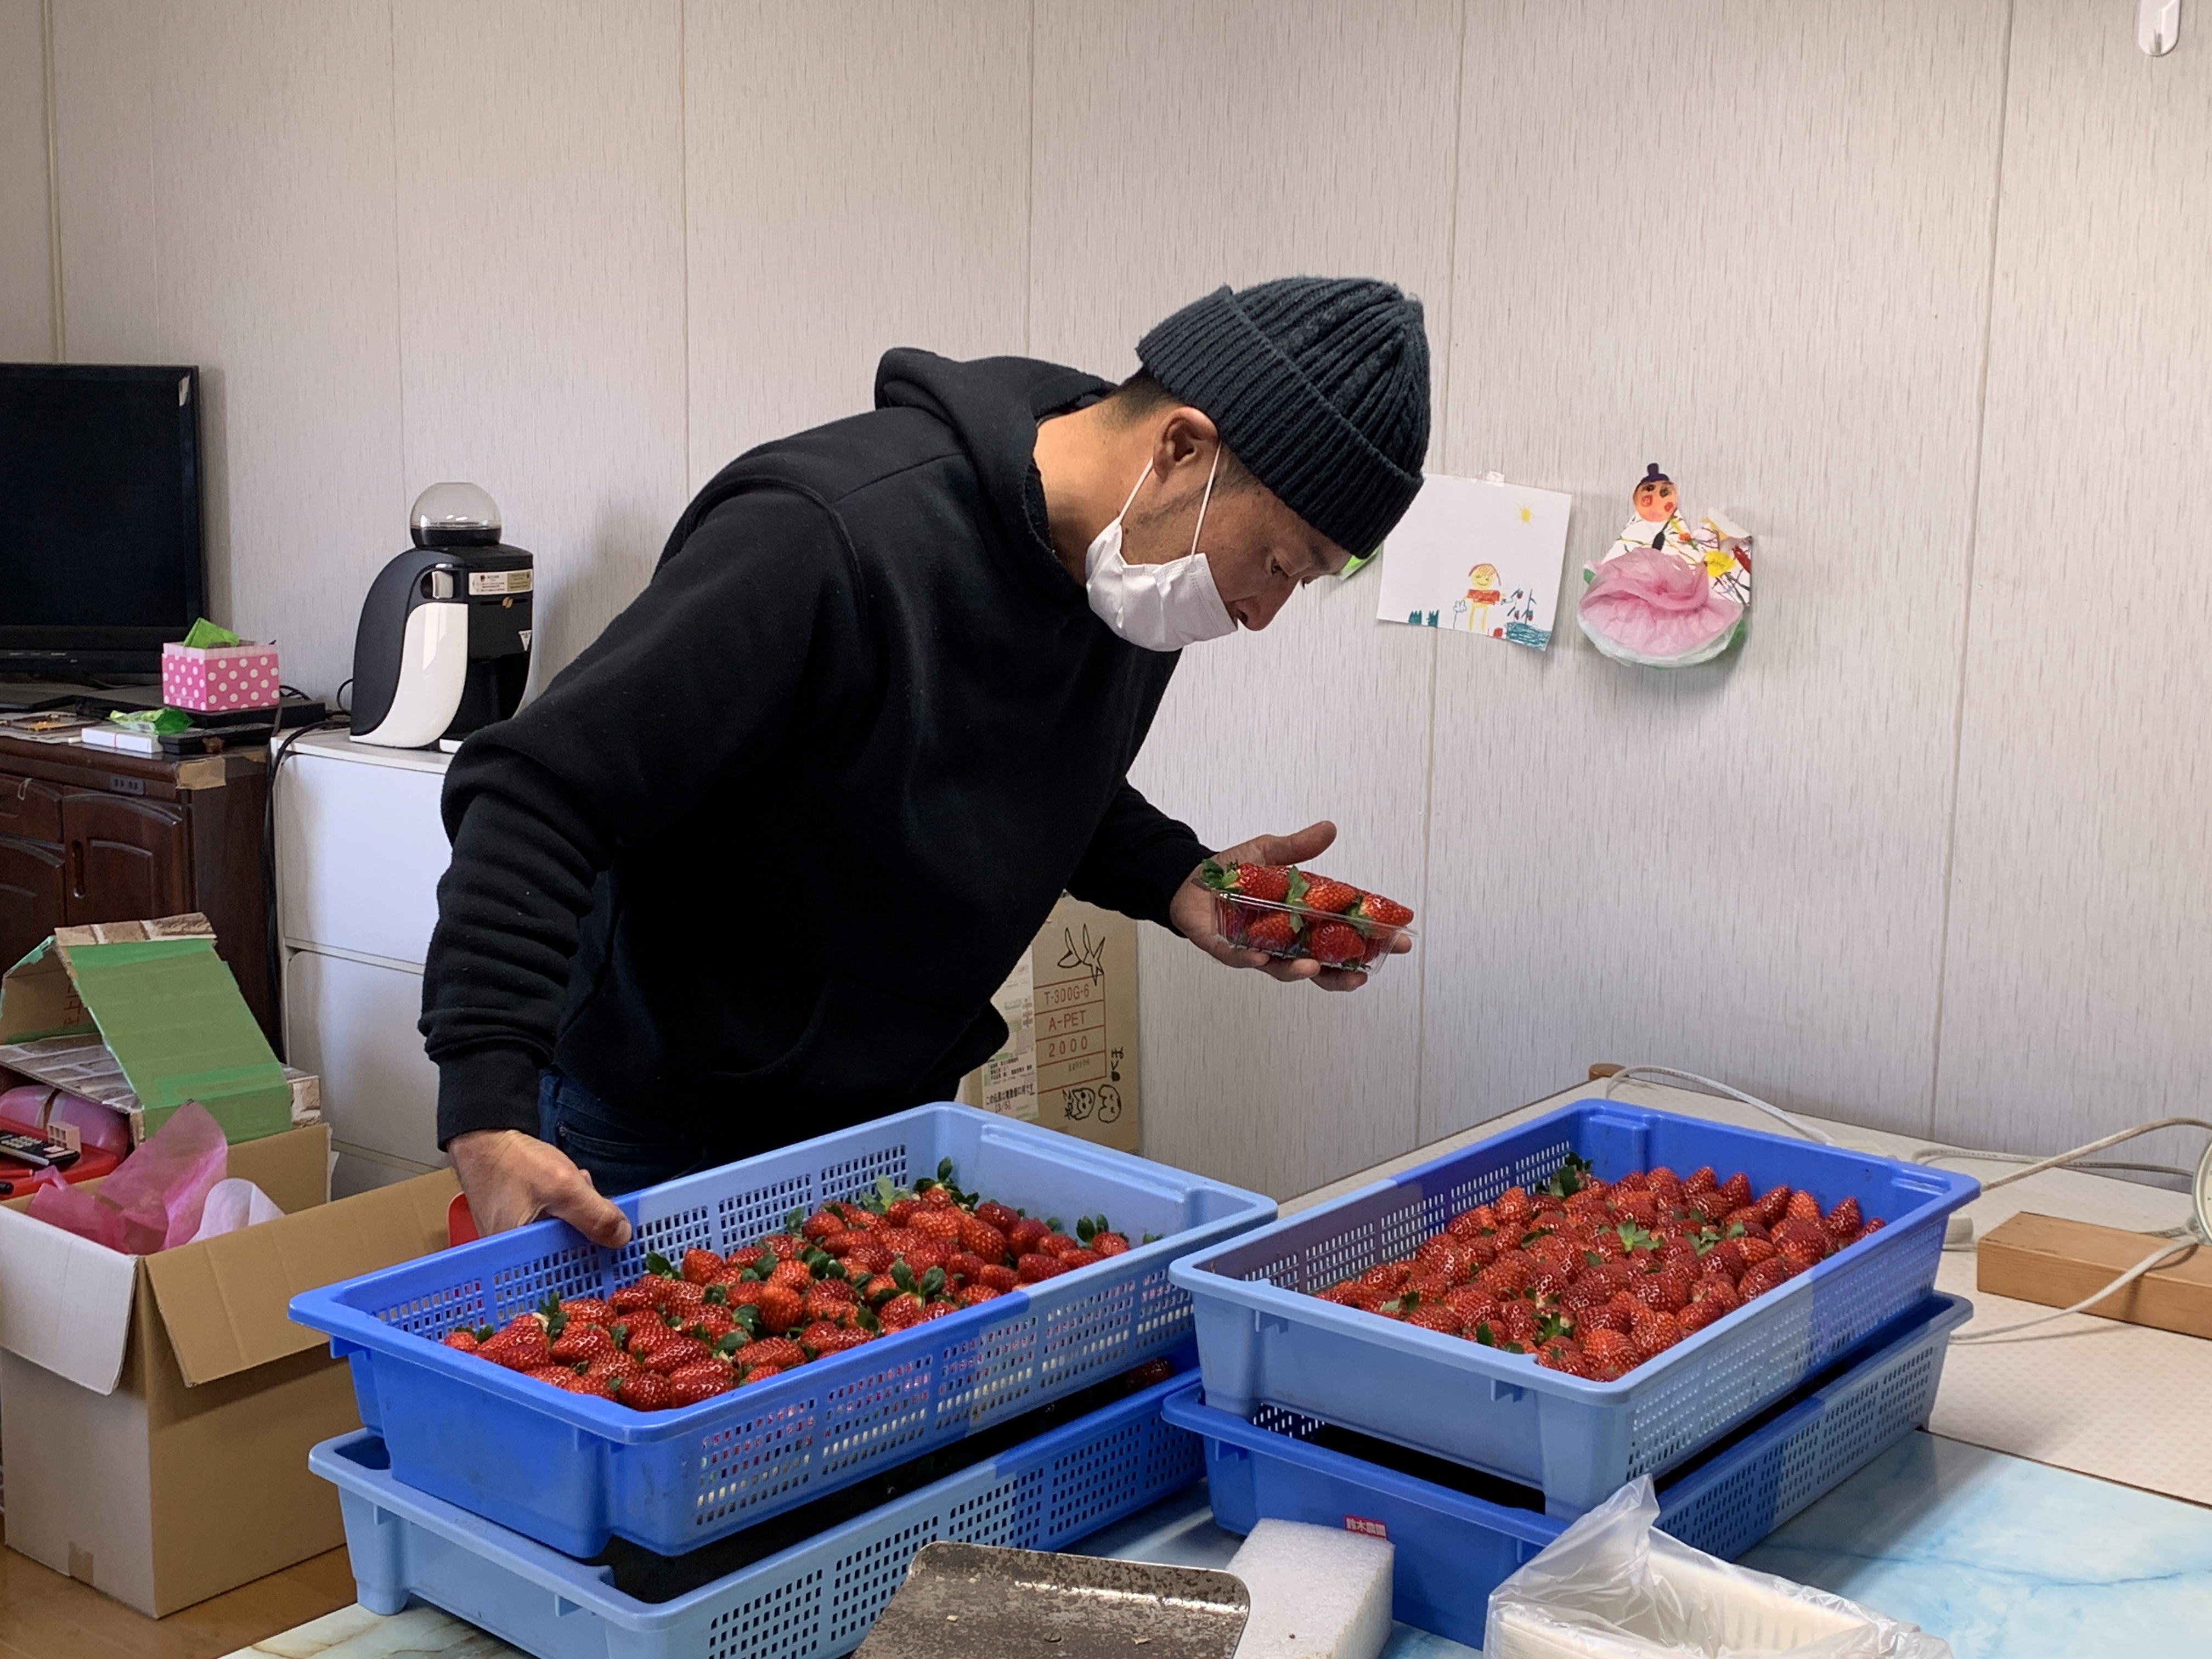 鈴木さんがいちごを梱包している様子の画像